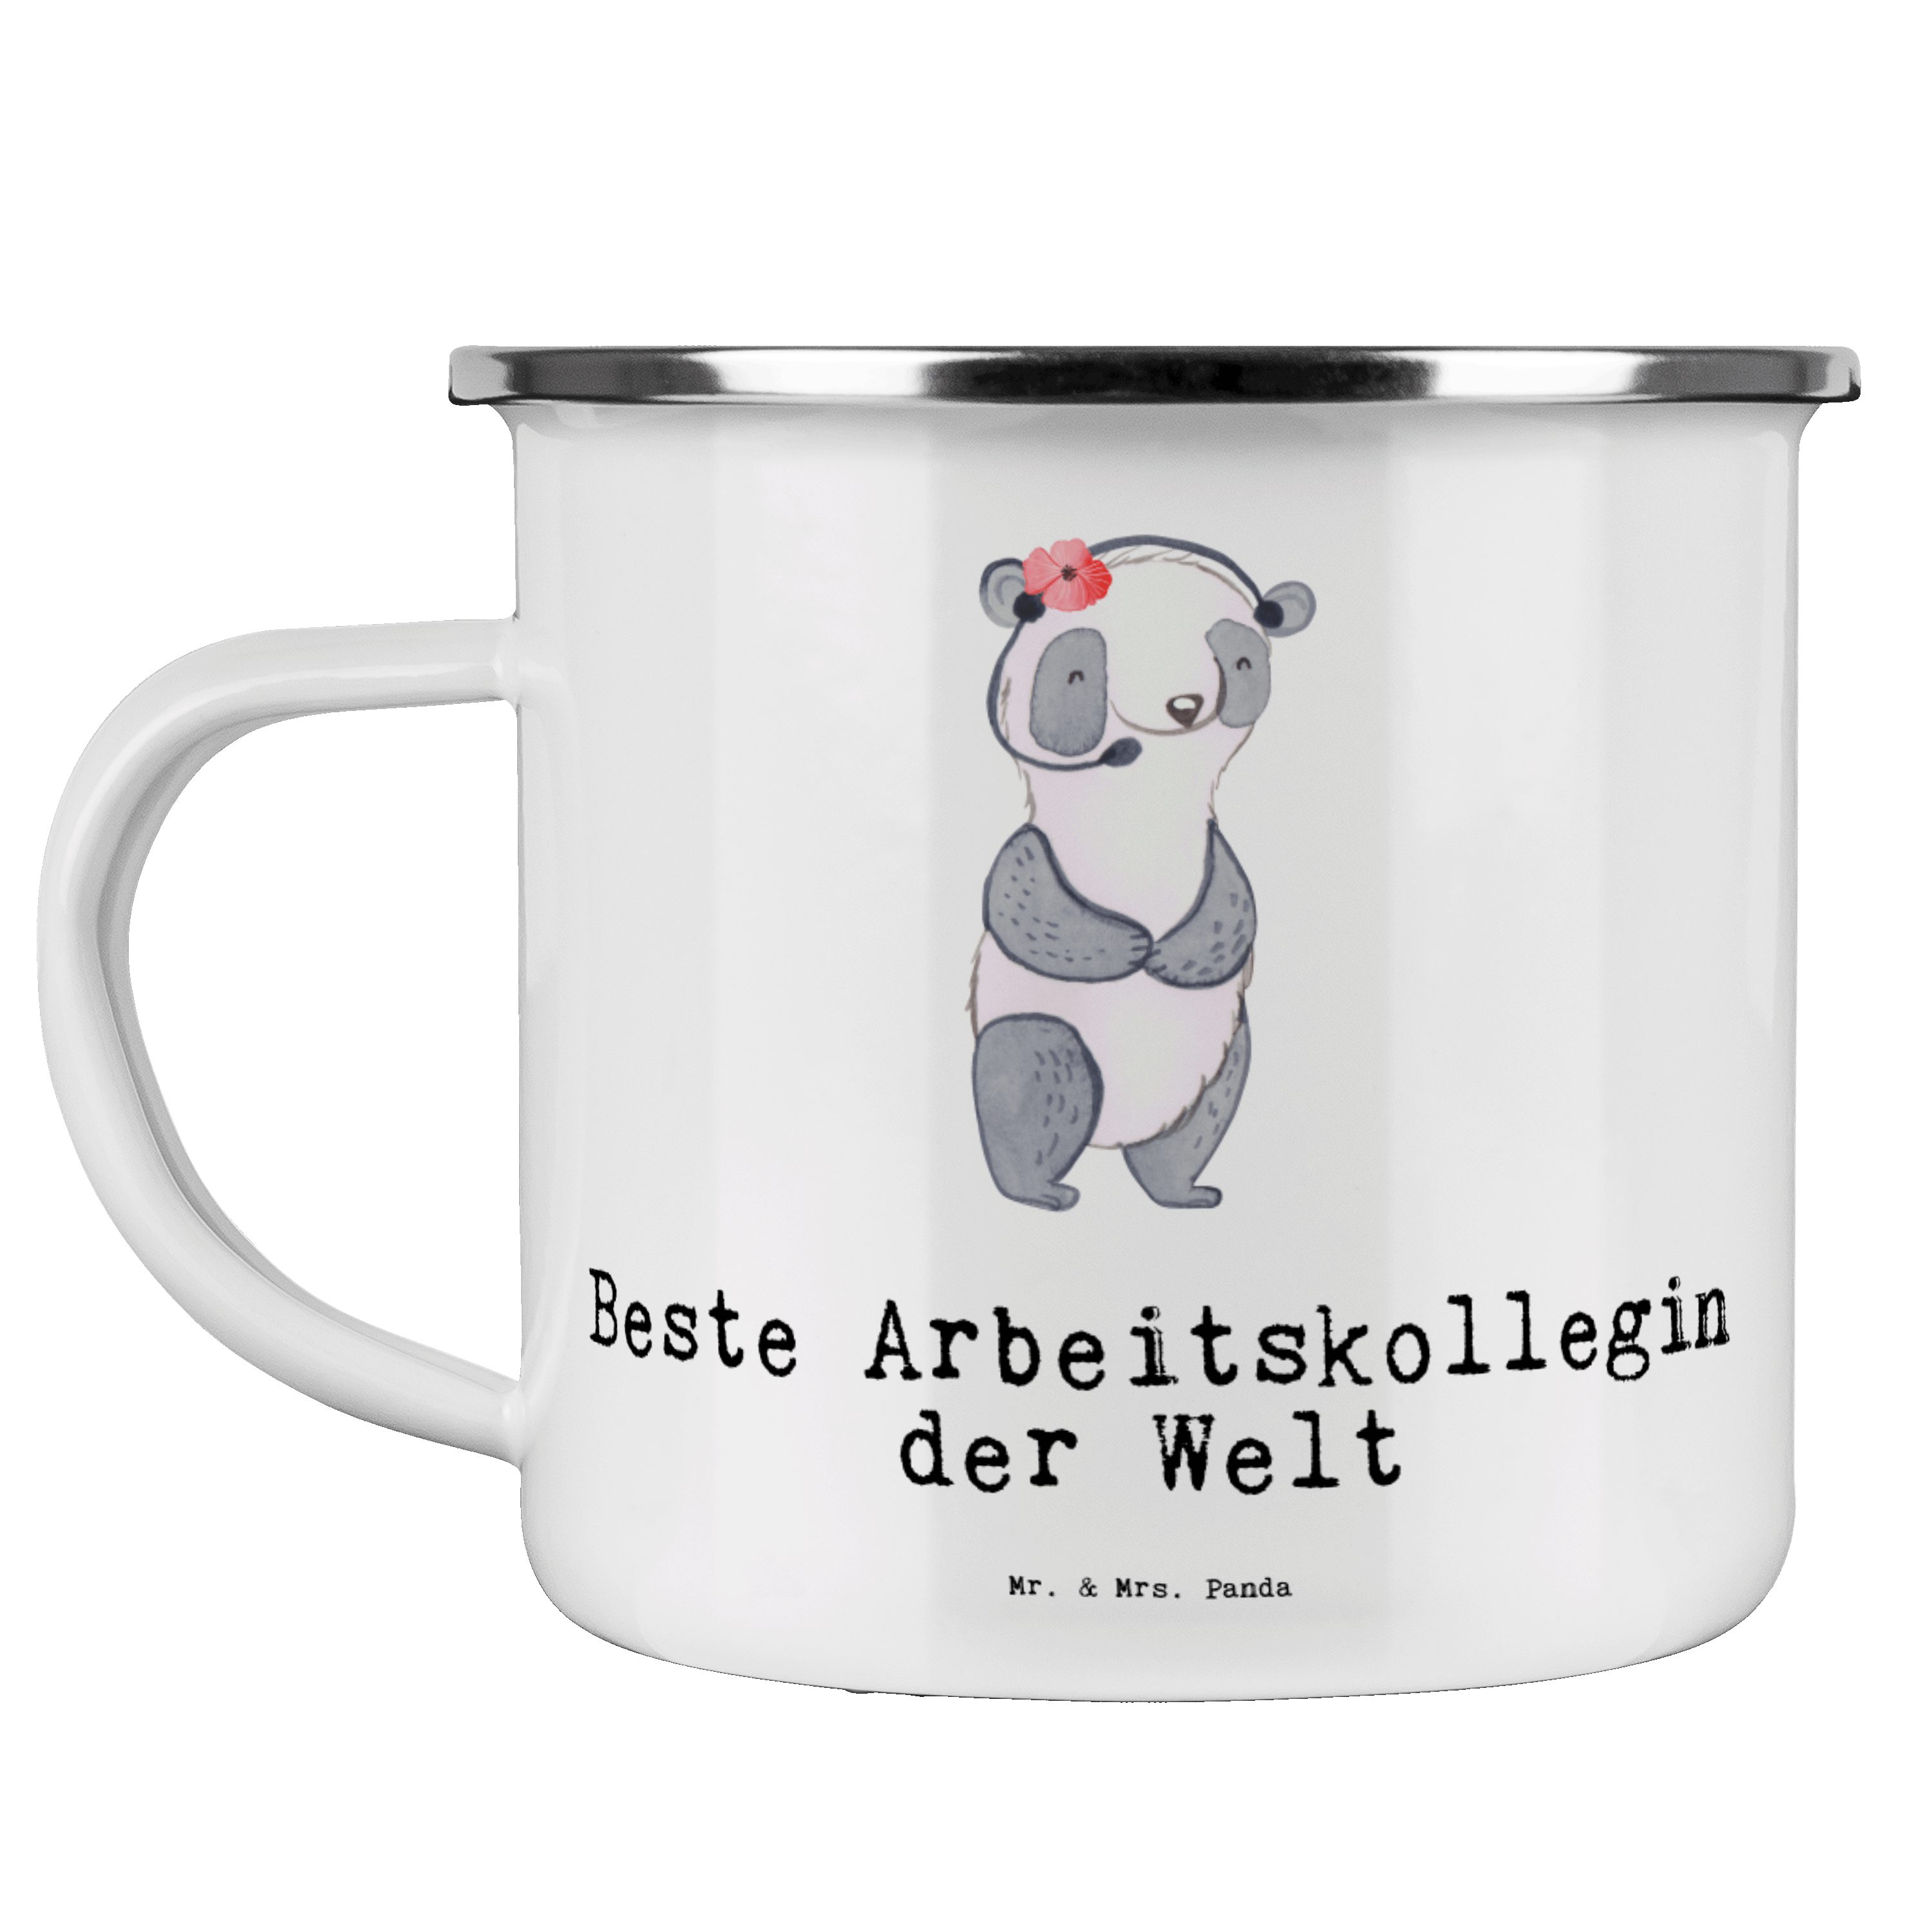 Mr. & Arbeitskollegin Panda Trink, Becher Panda Geschenk, Weiß - Beste Emaille Welt der Emaille - Mrs